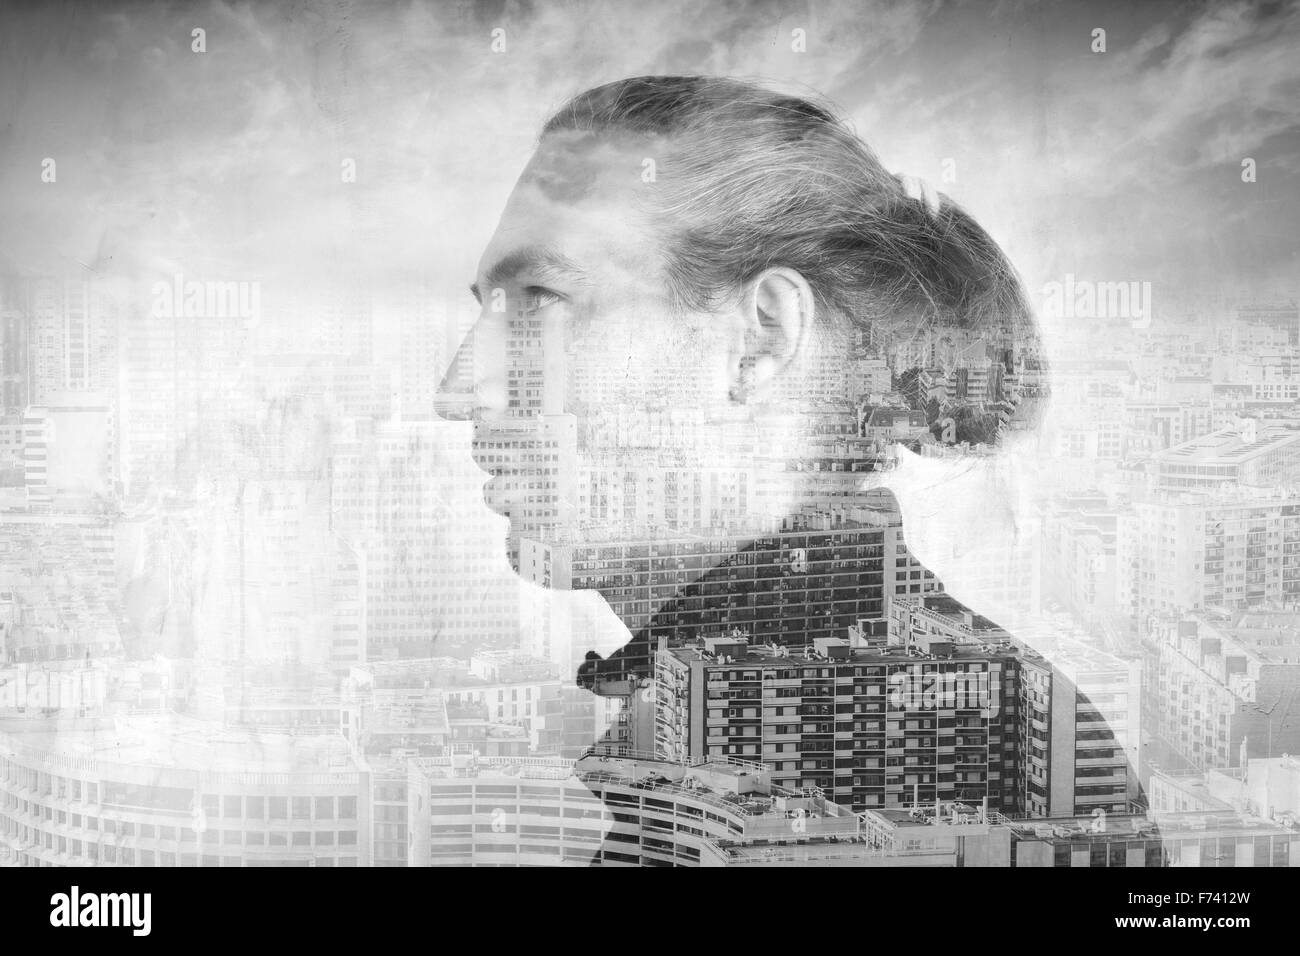 Profilo Ritratto di giovane uomo combinato con paesaggio urbano moderno sotto il cielo nuvoloso, doppia esposizione di un effetto fotografico Foto Stock